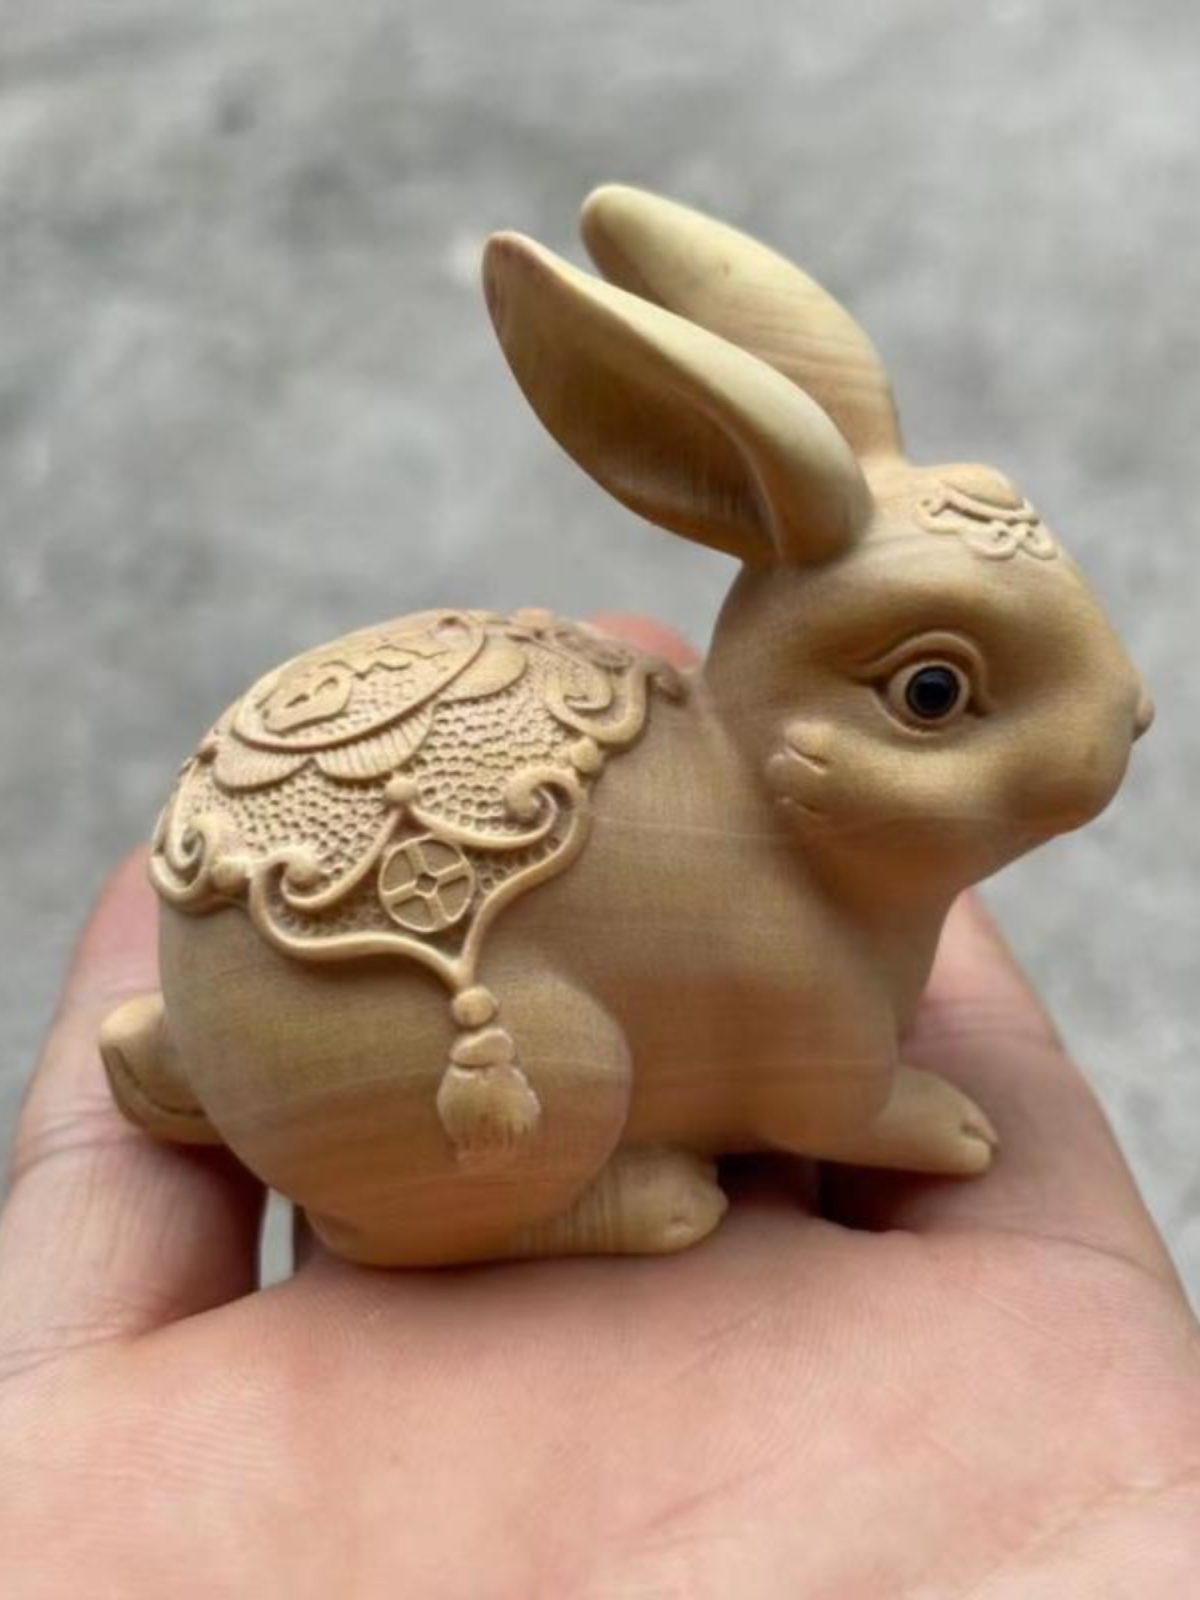 小叶黄杨木雕刻兔子摆件手把件木头生肖小白兔家居装饰挂件工艺品